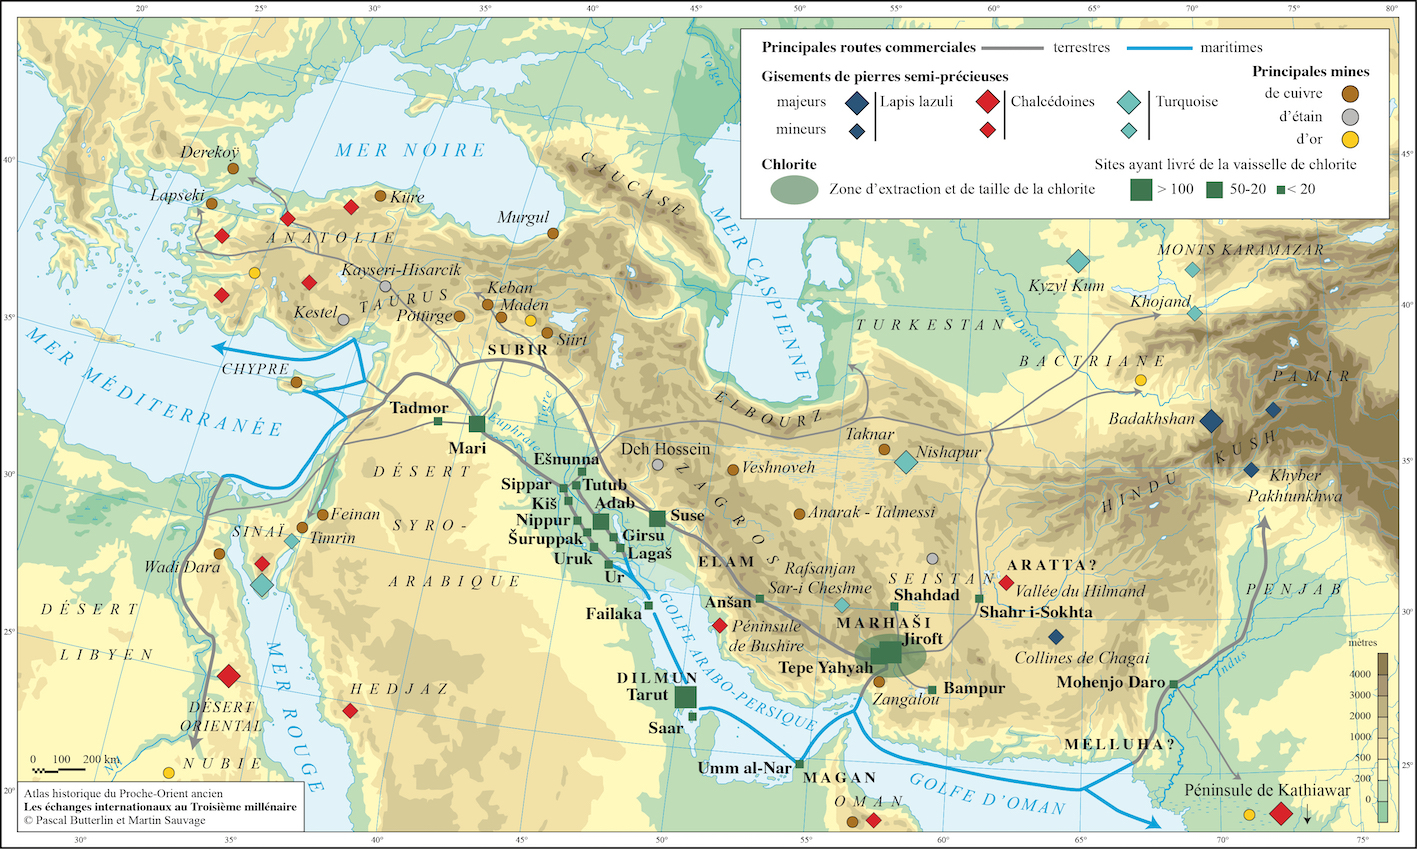 Cette carte rend indique la localisation des principaux gisements connus de pierres semi-précieuses dans diverses diverses régions d'Asie centrale au IIIe millénaire av. notre ère et des routes commerciales à longue distance empruntées pour leur importation.